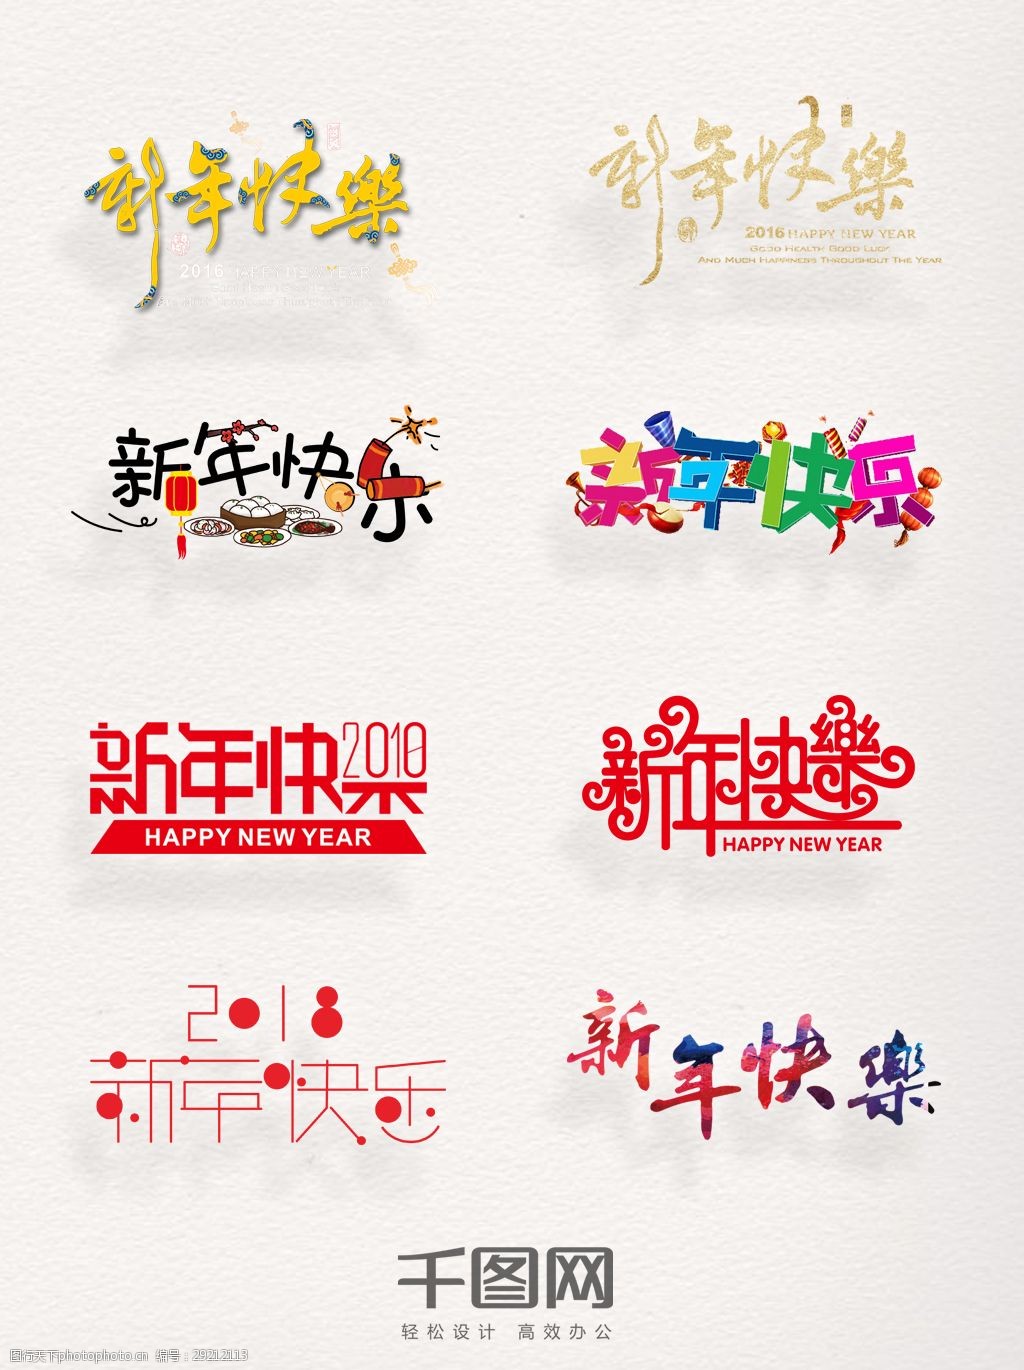 关键词:一组彩色新年快乐设计素材 春节 节日 祝福语 窗花 可爱 艺术